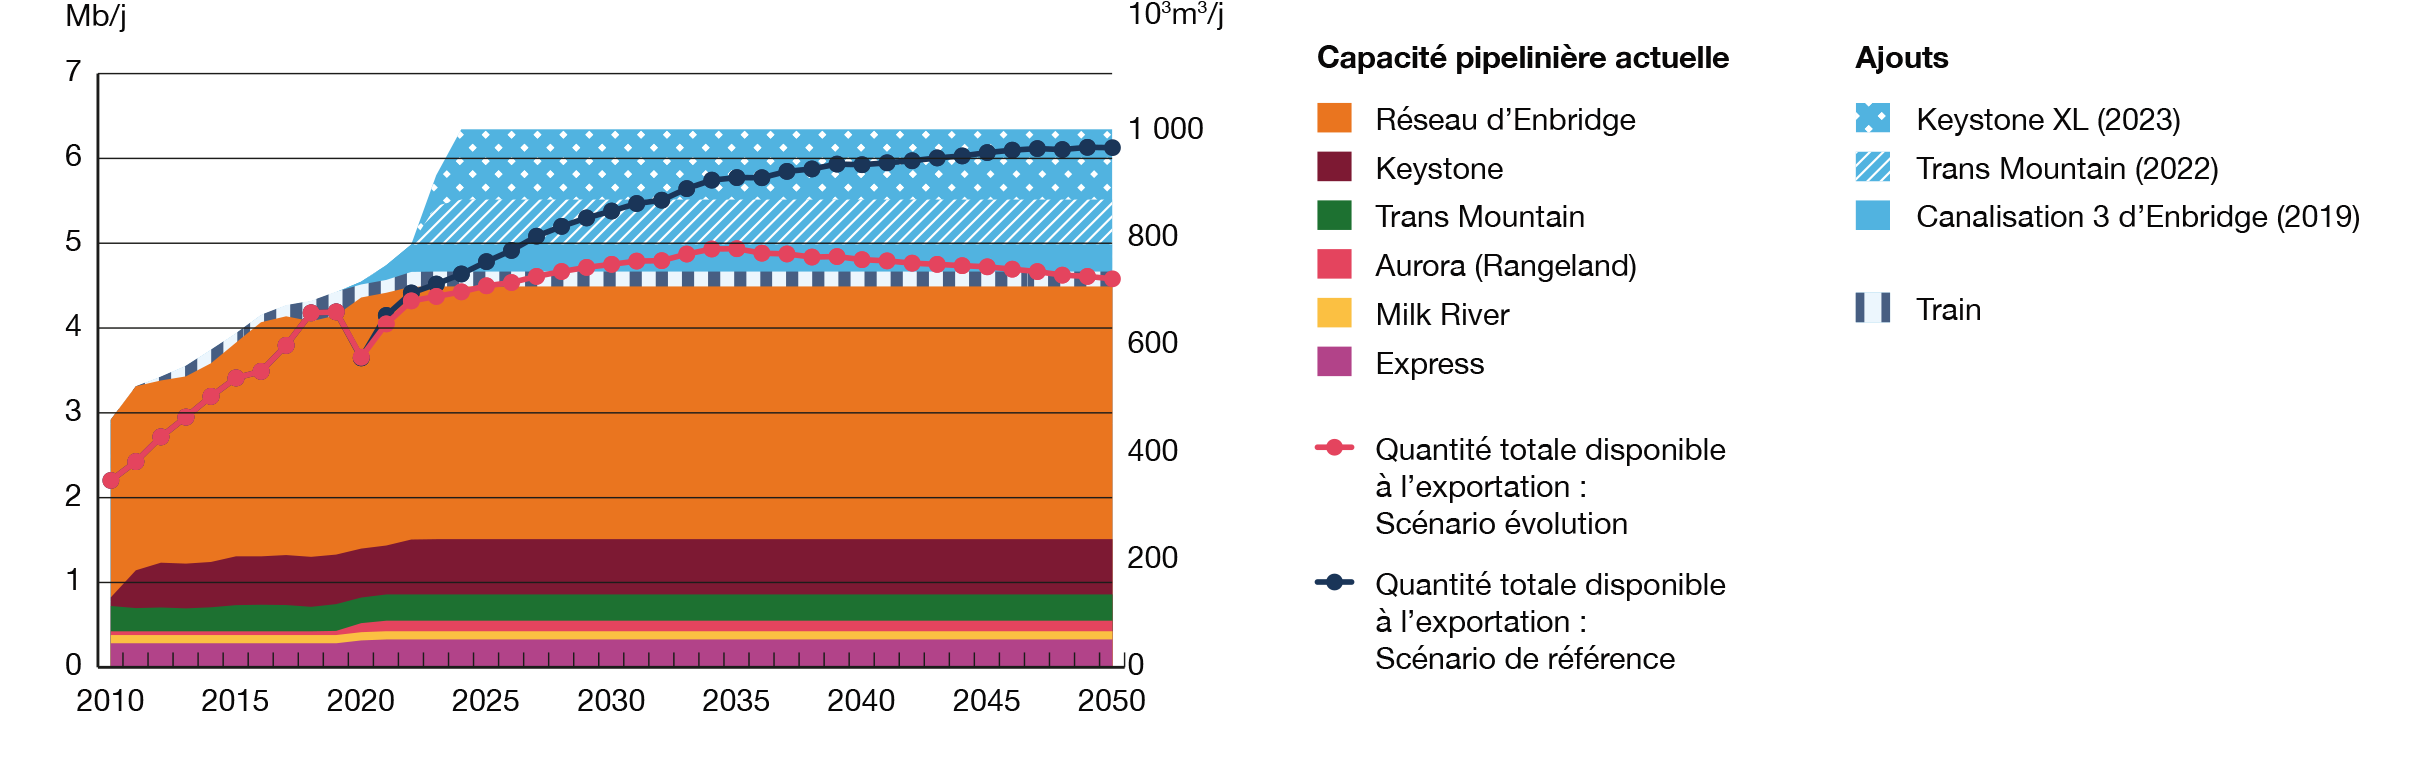 Figure R12 Comparaison de la capacité des oléoducs et de l’approvisionnement total disponible à l’exportation – Scénarios Évolution et de référence